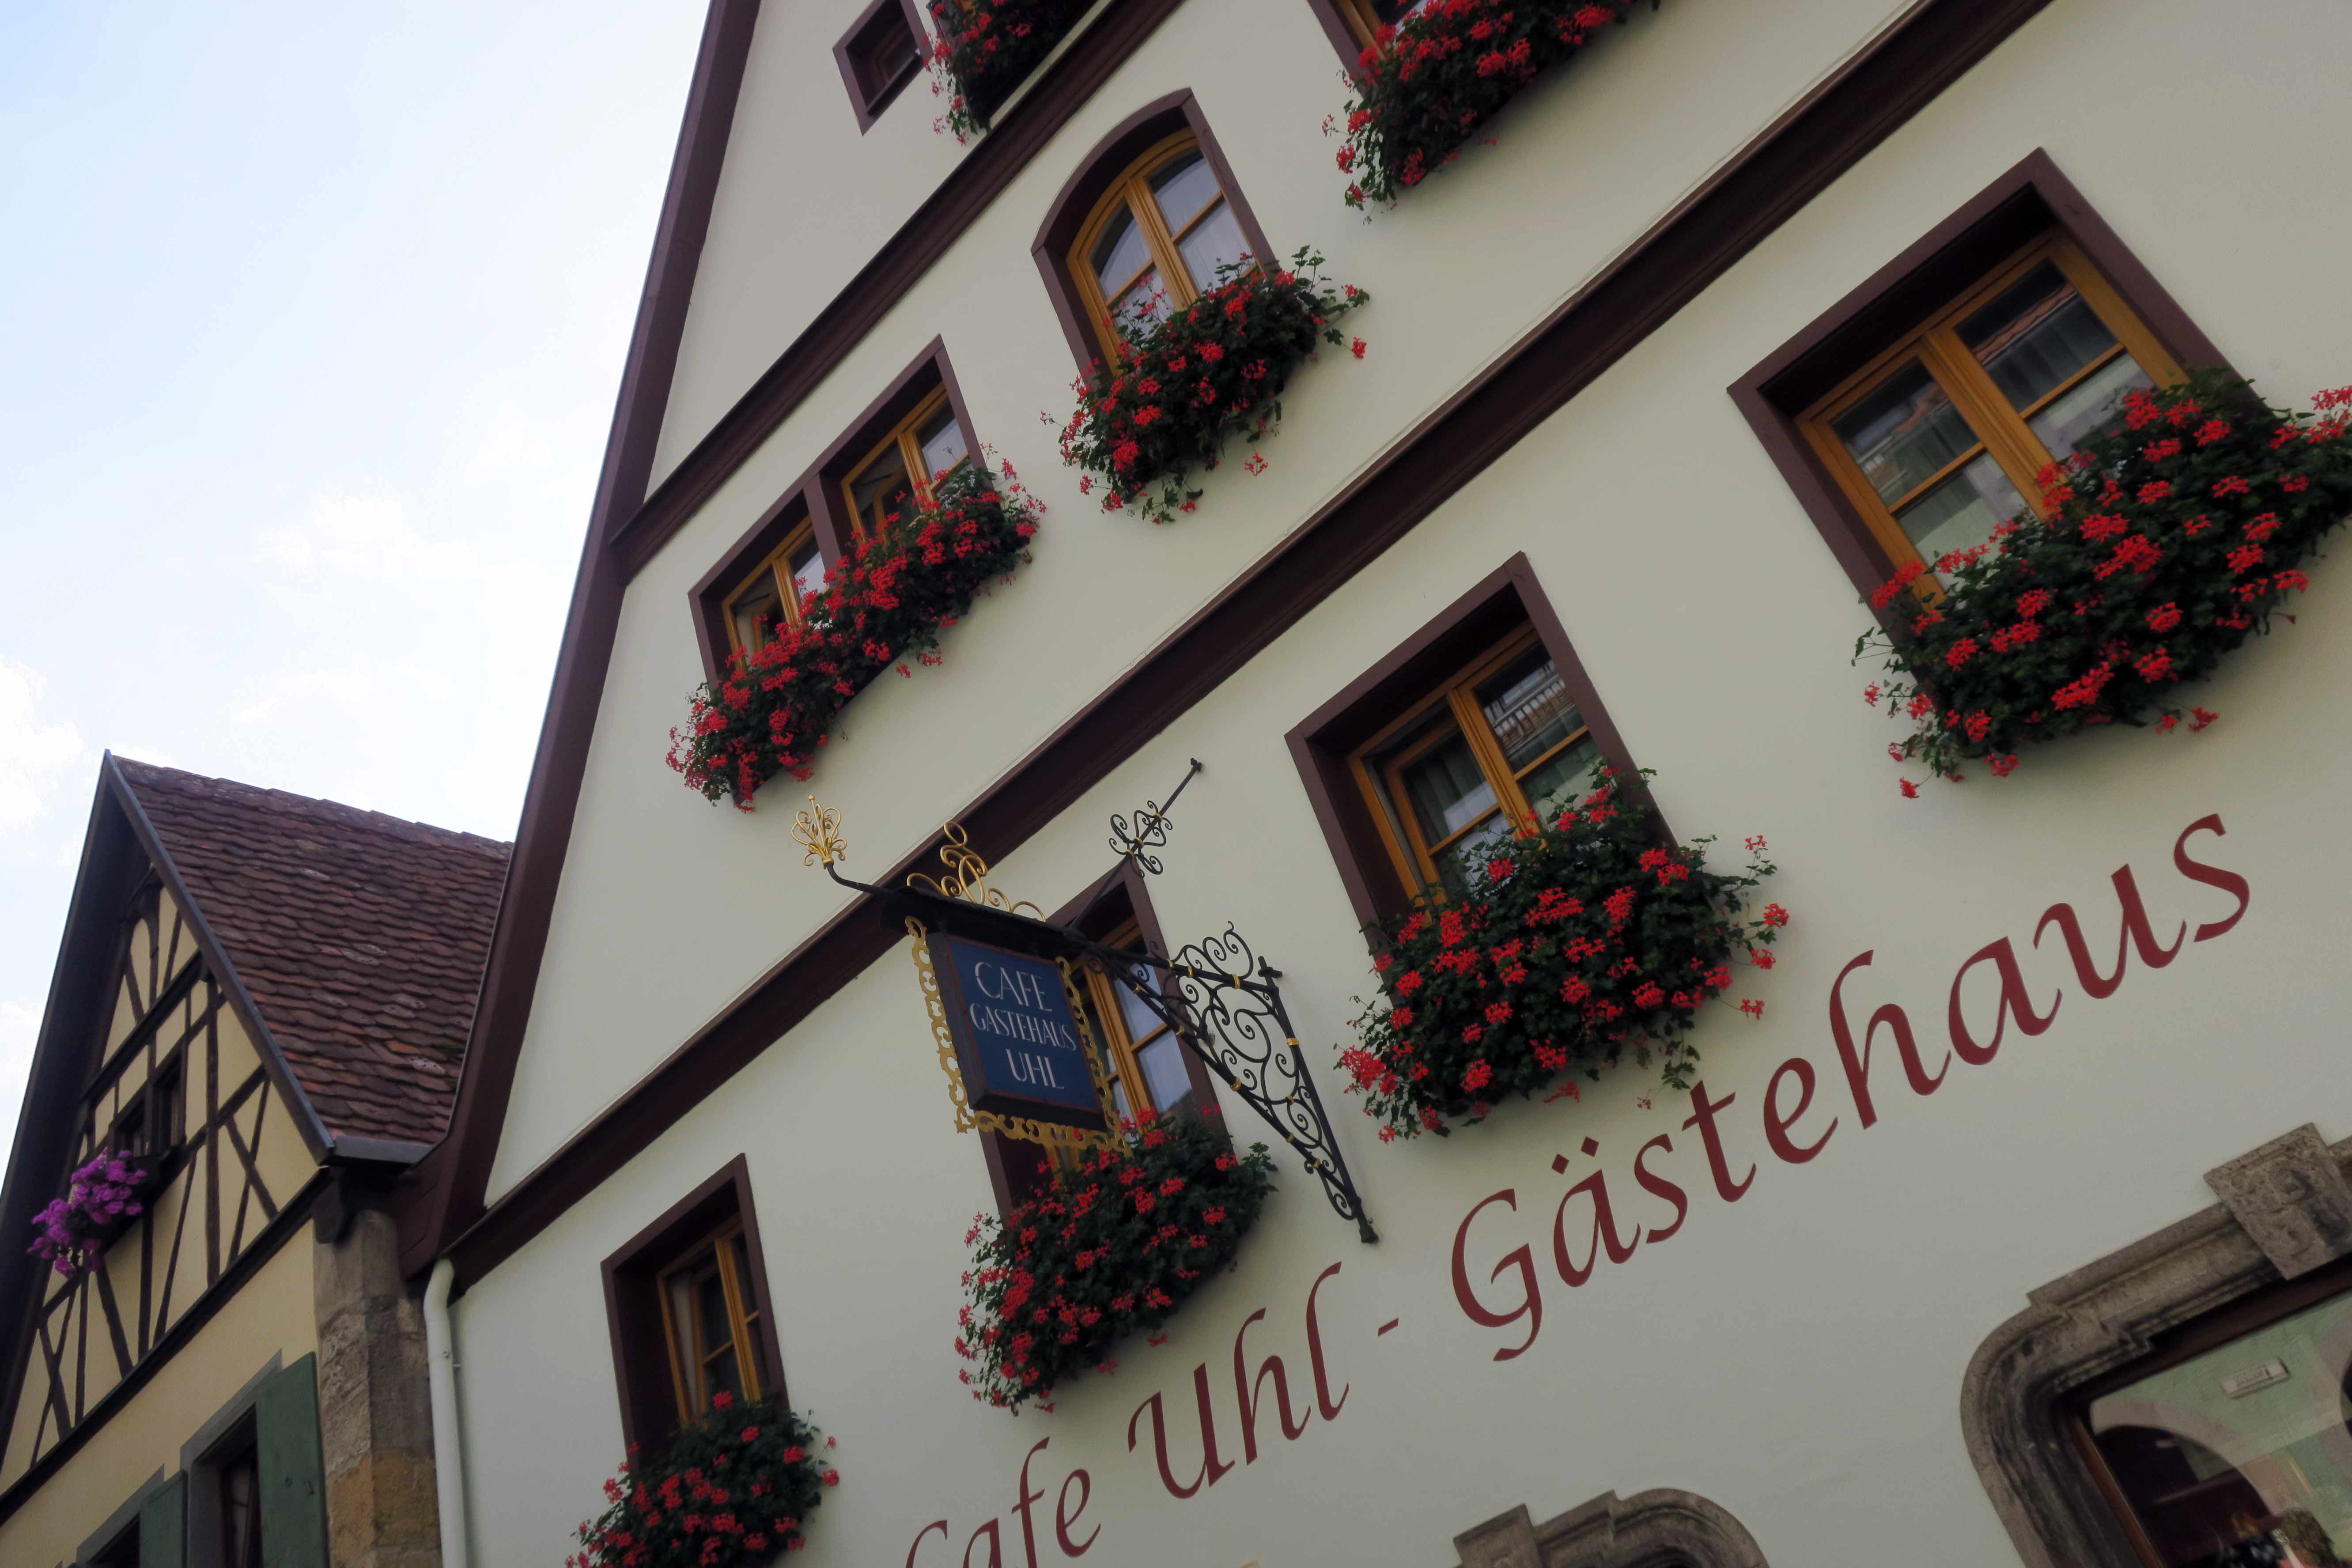 Vi er hjemme igen efter en skøn inspirations-tur ned gennem Europa. Vi er så heldige, at vi besøgte blandt andet Rothenburg ...